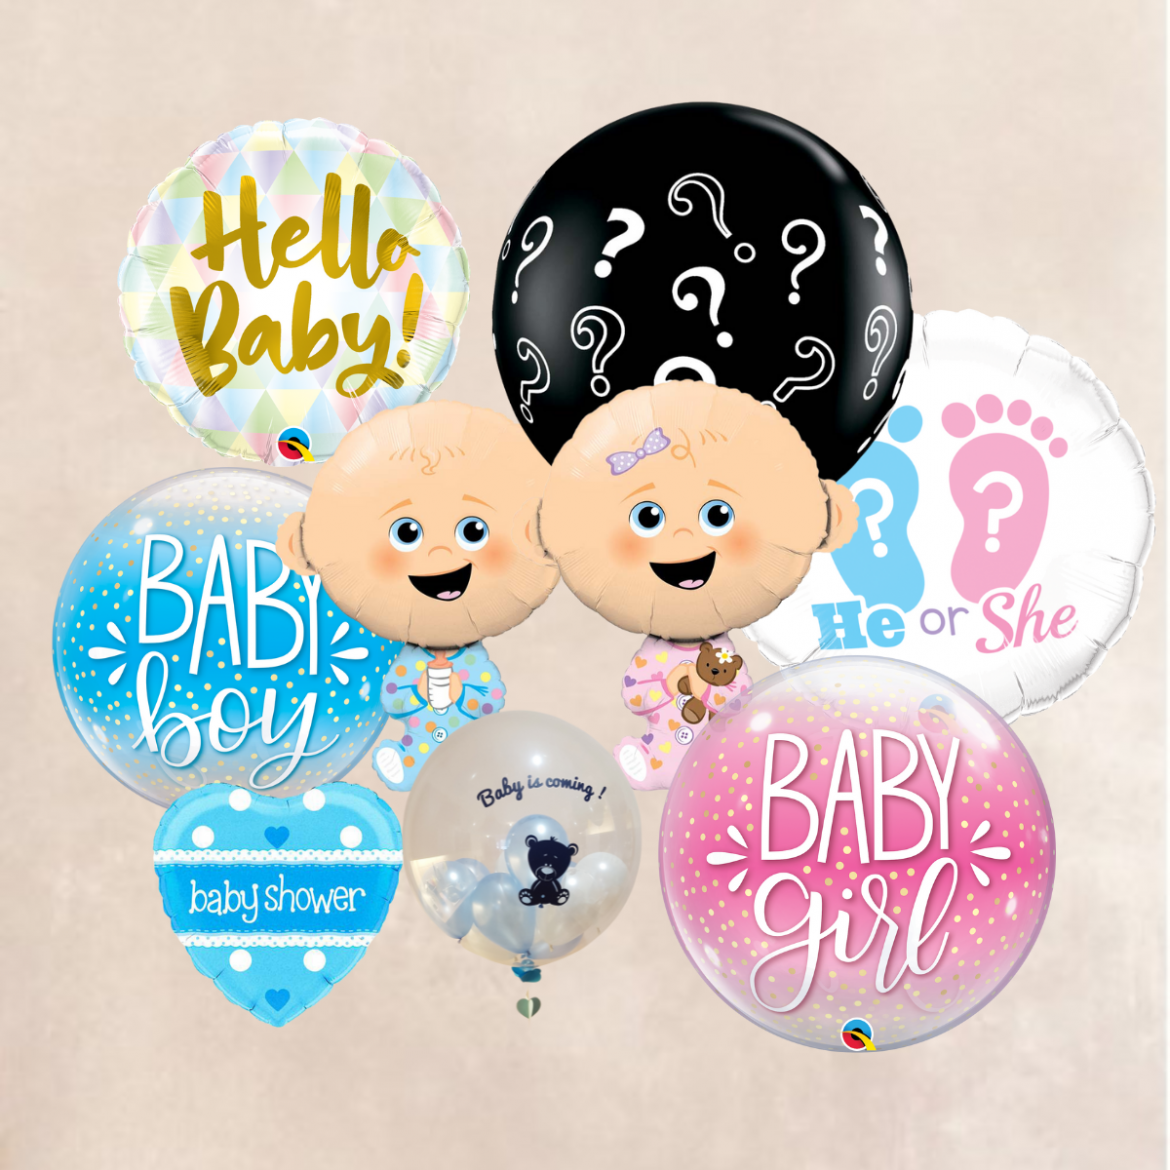 Ballons pour révélation de genre baby shower naissance 1 an